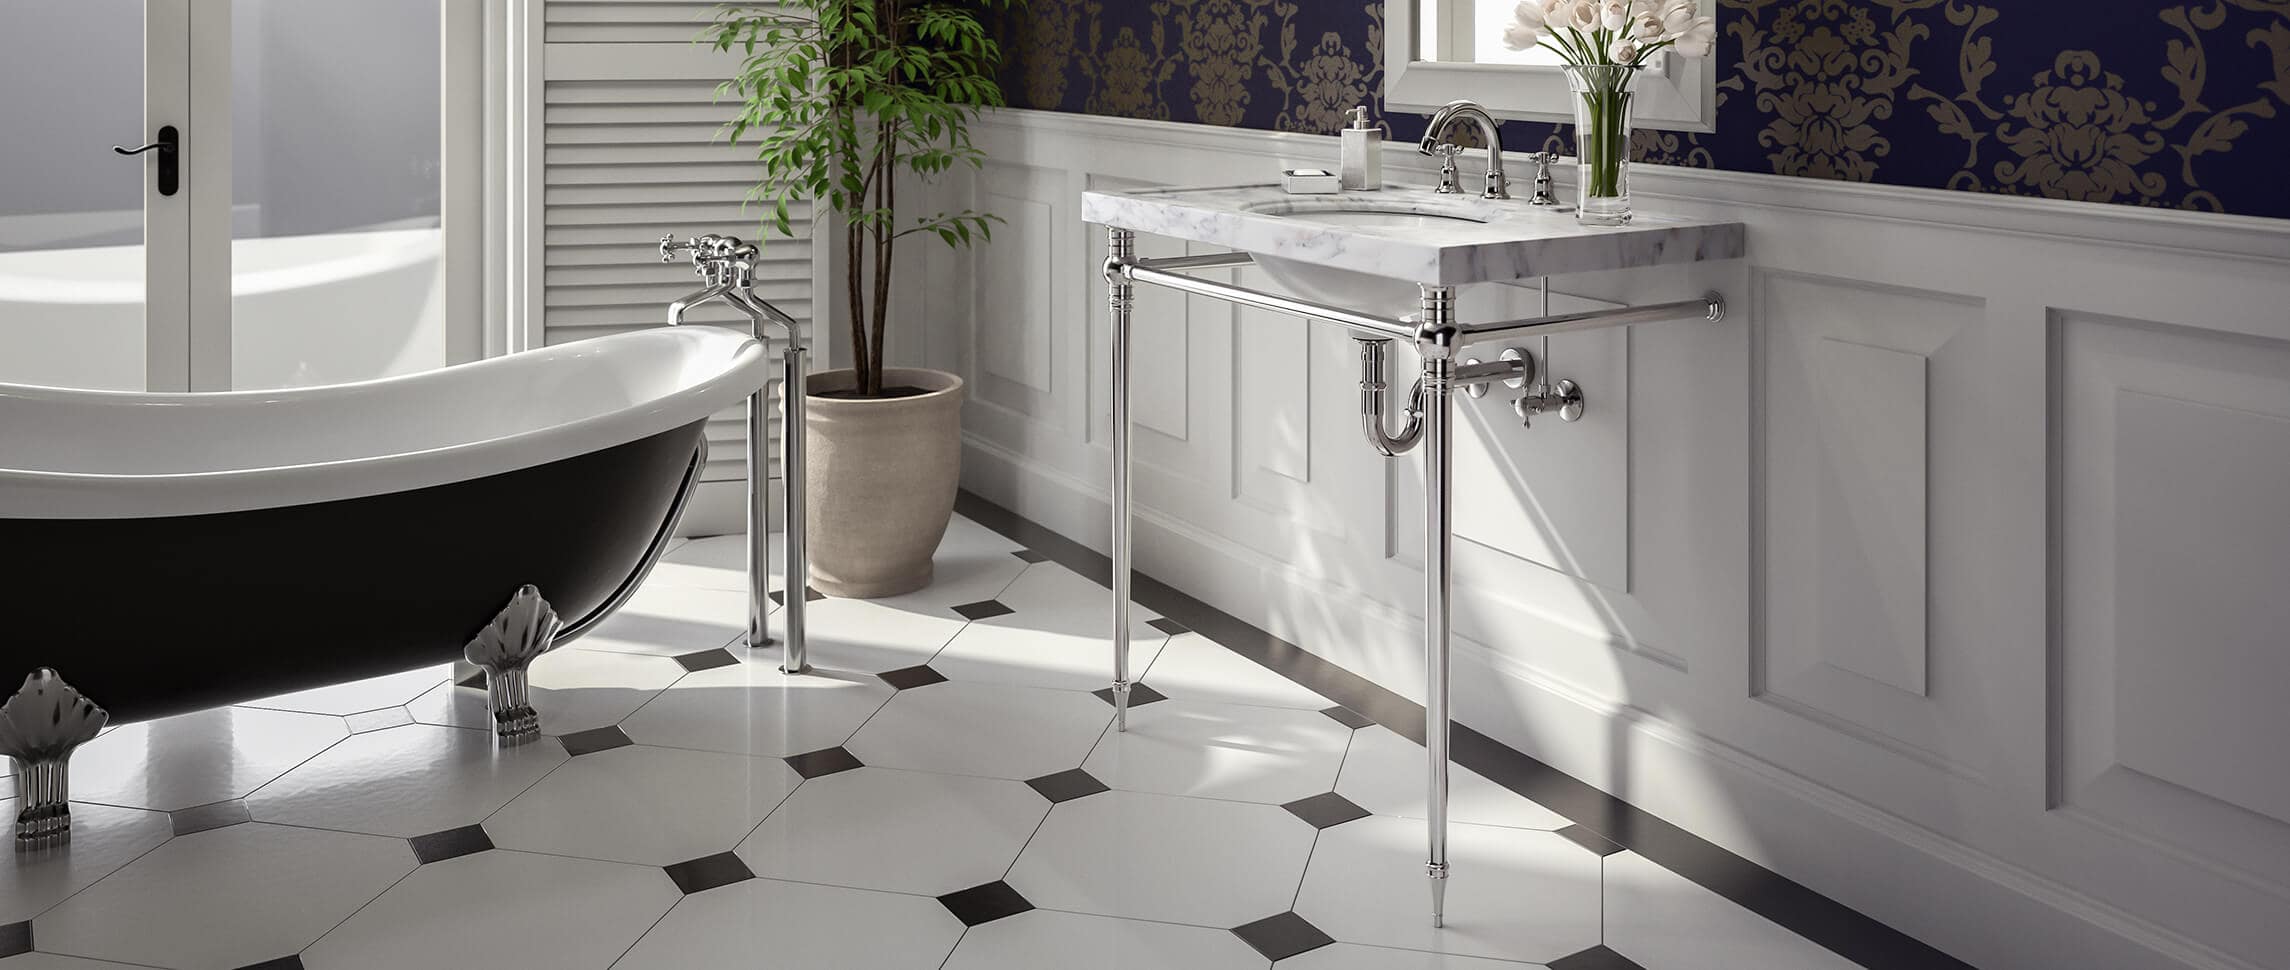 Kingston style vanity sink legs in elegant bathroom